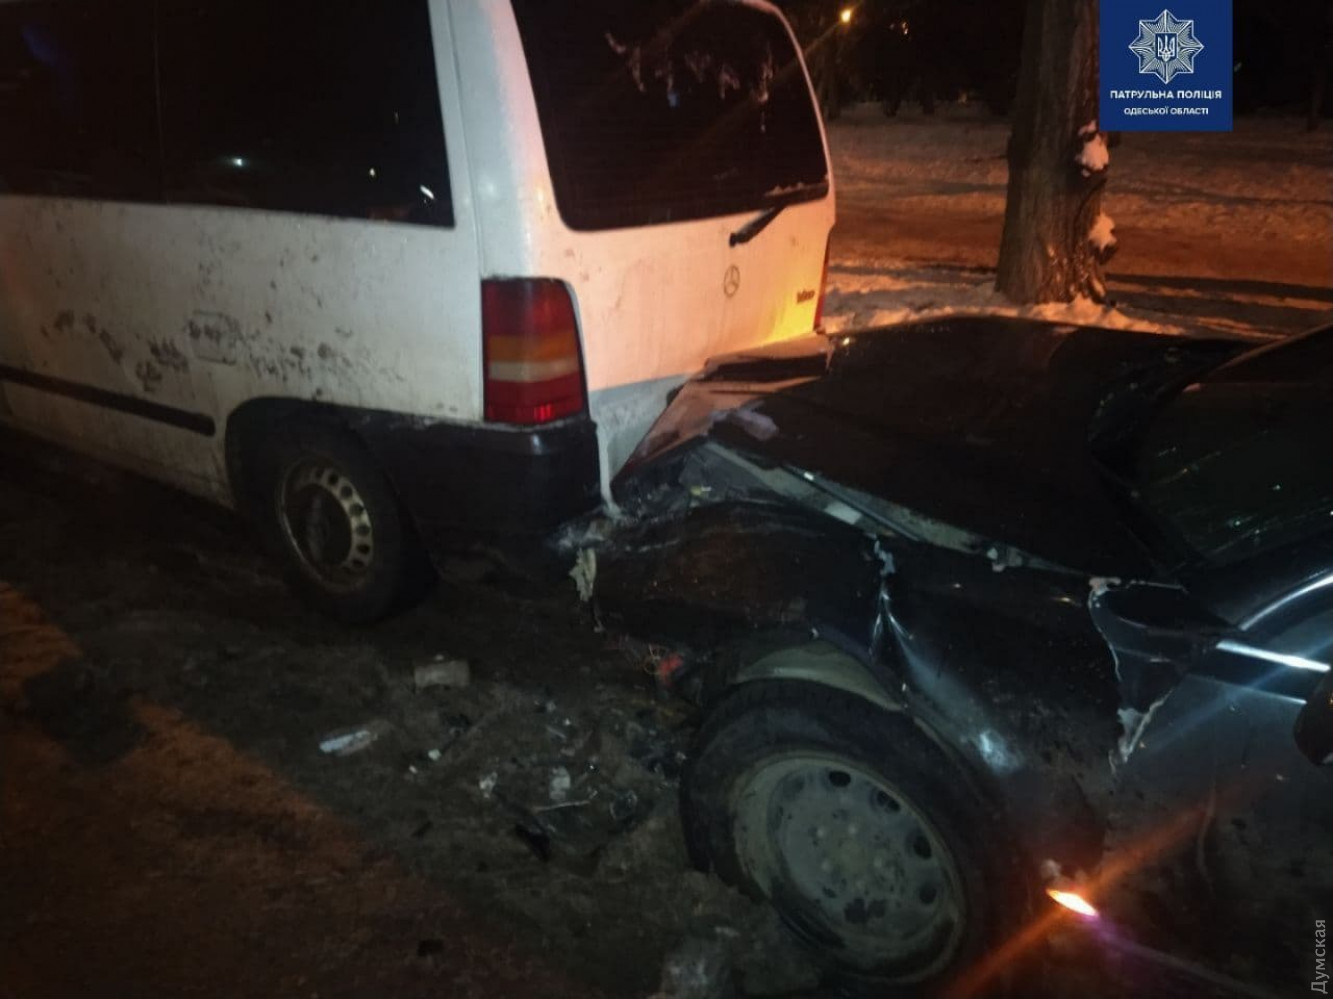 П'яний водій в Одесі спотворив сім автомобілів - ФОТО — фото 2